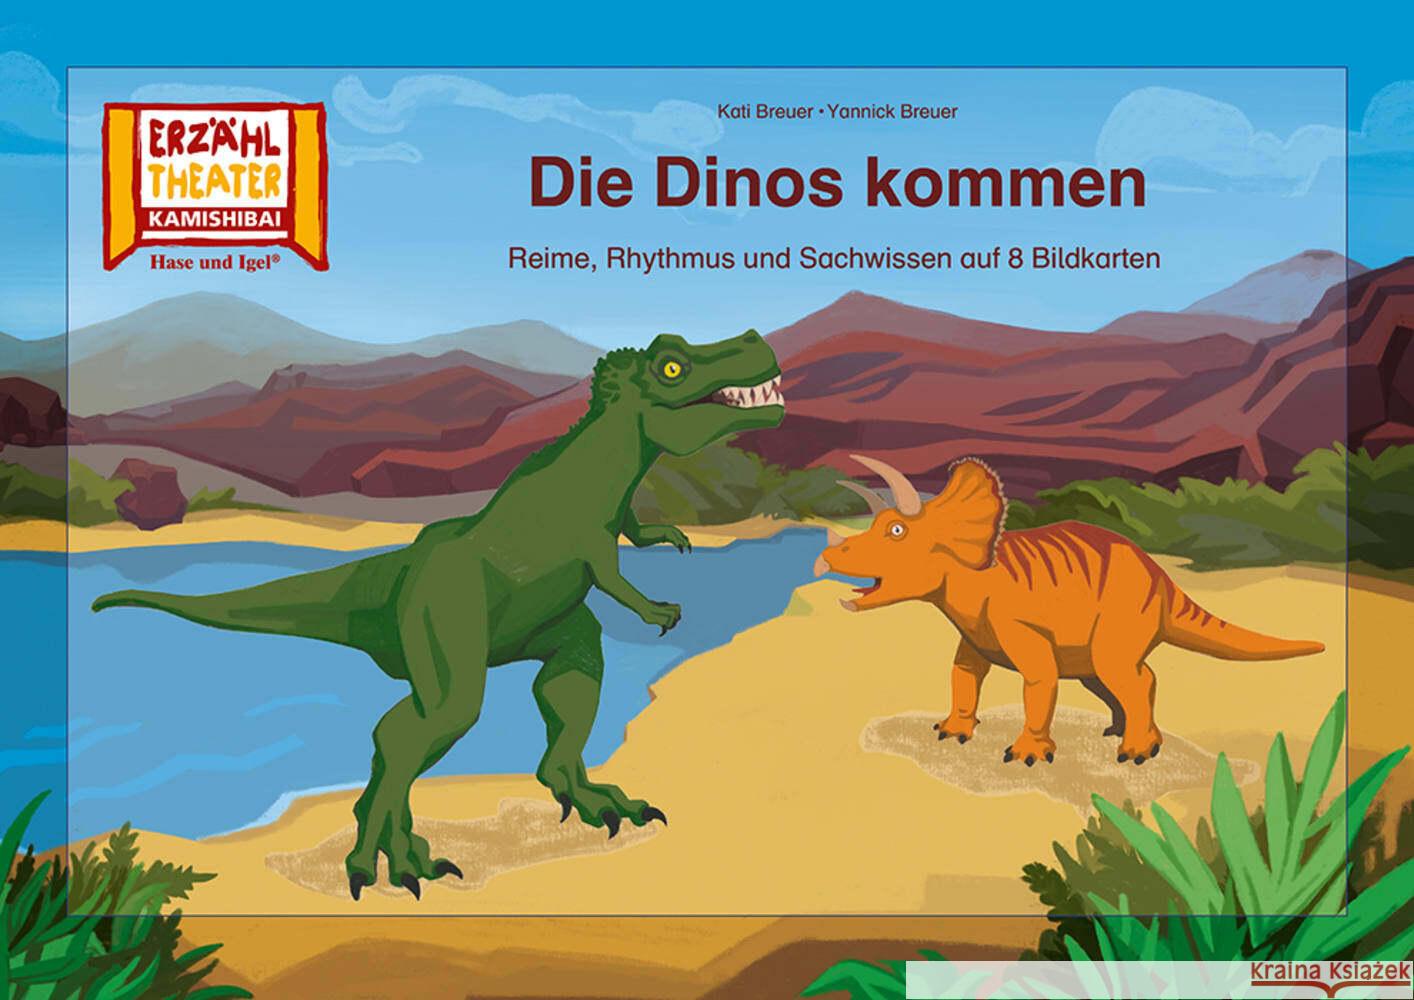 Die Dinos kommen / Kamishibai Bildkarten Breuer, Kati, Breuer, Yannick 4260505832728